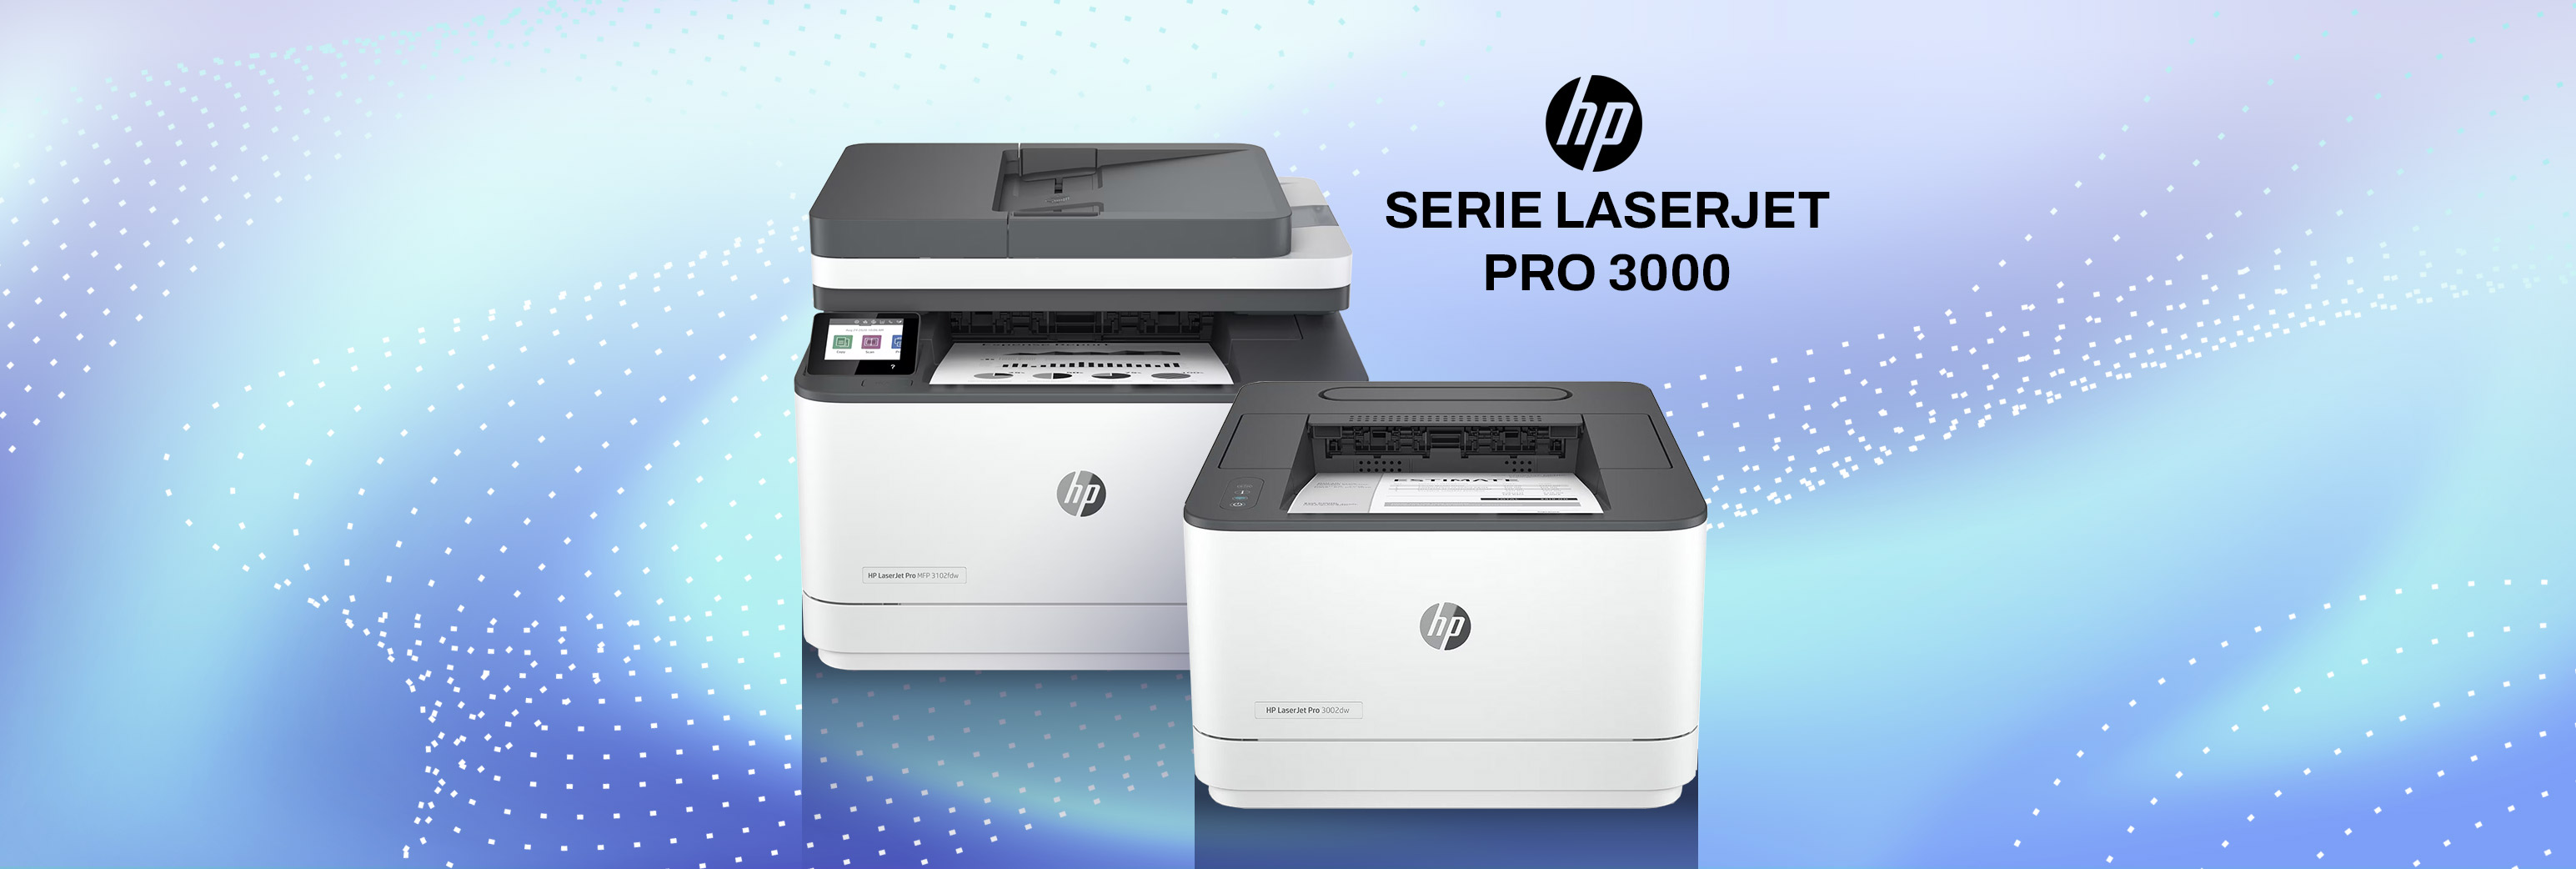 La nouvelle série HP LaserJet Pro 3000 couleur